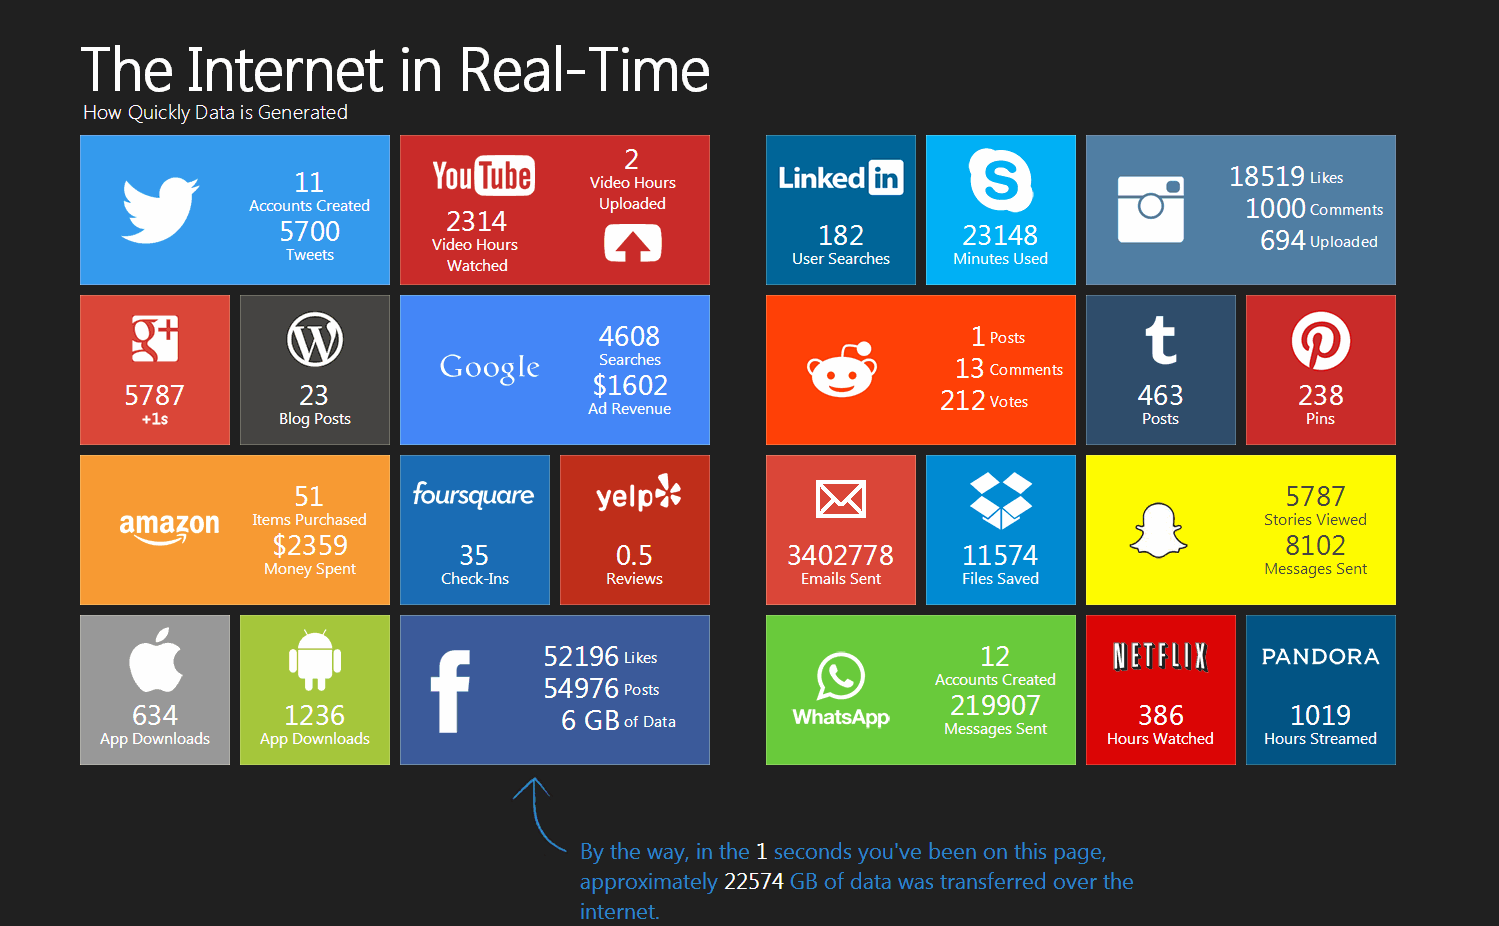 Reseaux-sociaux-en-temps-reel-chaque seconde -sur-le-web-infographie (2)